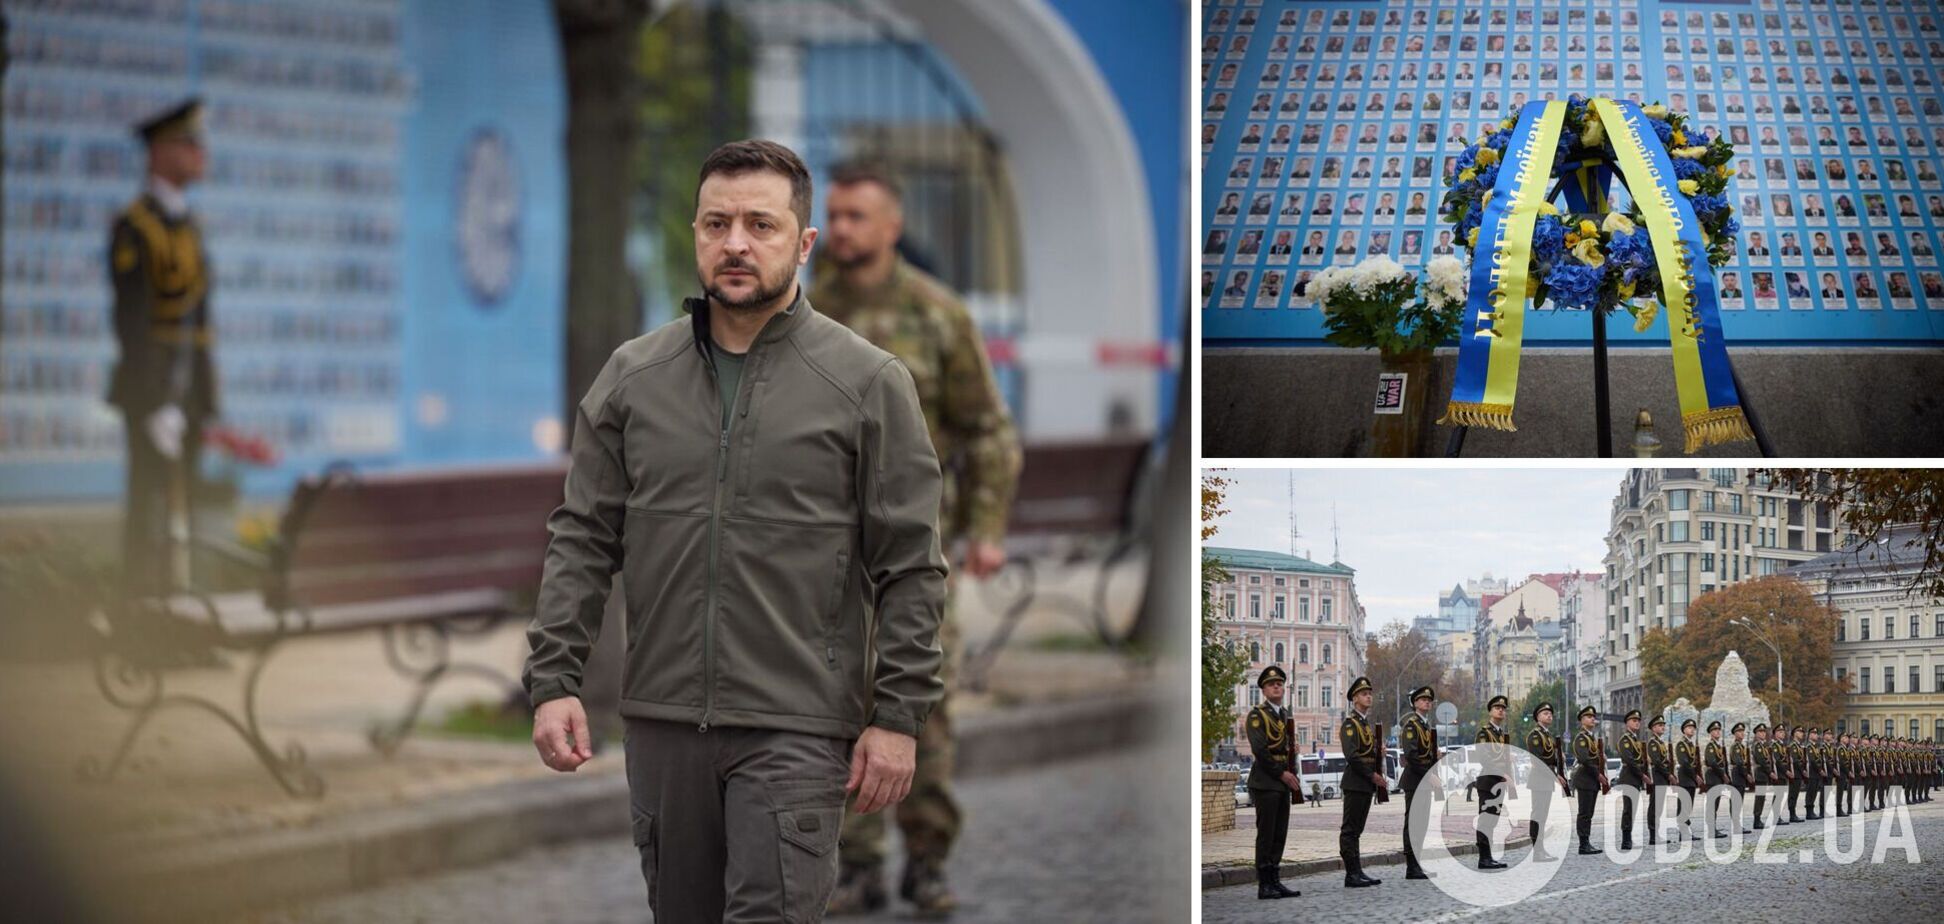 'Їхні подвиги назавжди в історії': Зеленський вшанував пам'ять захисників, які віддали життя за Україну. Відео 